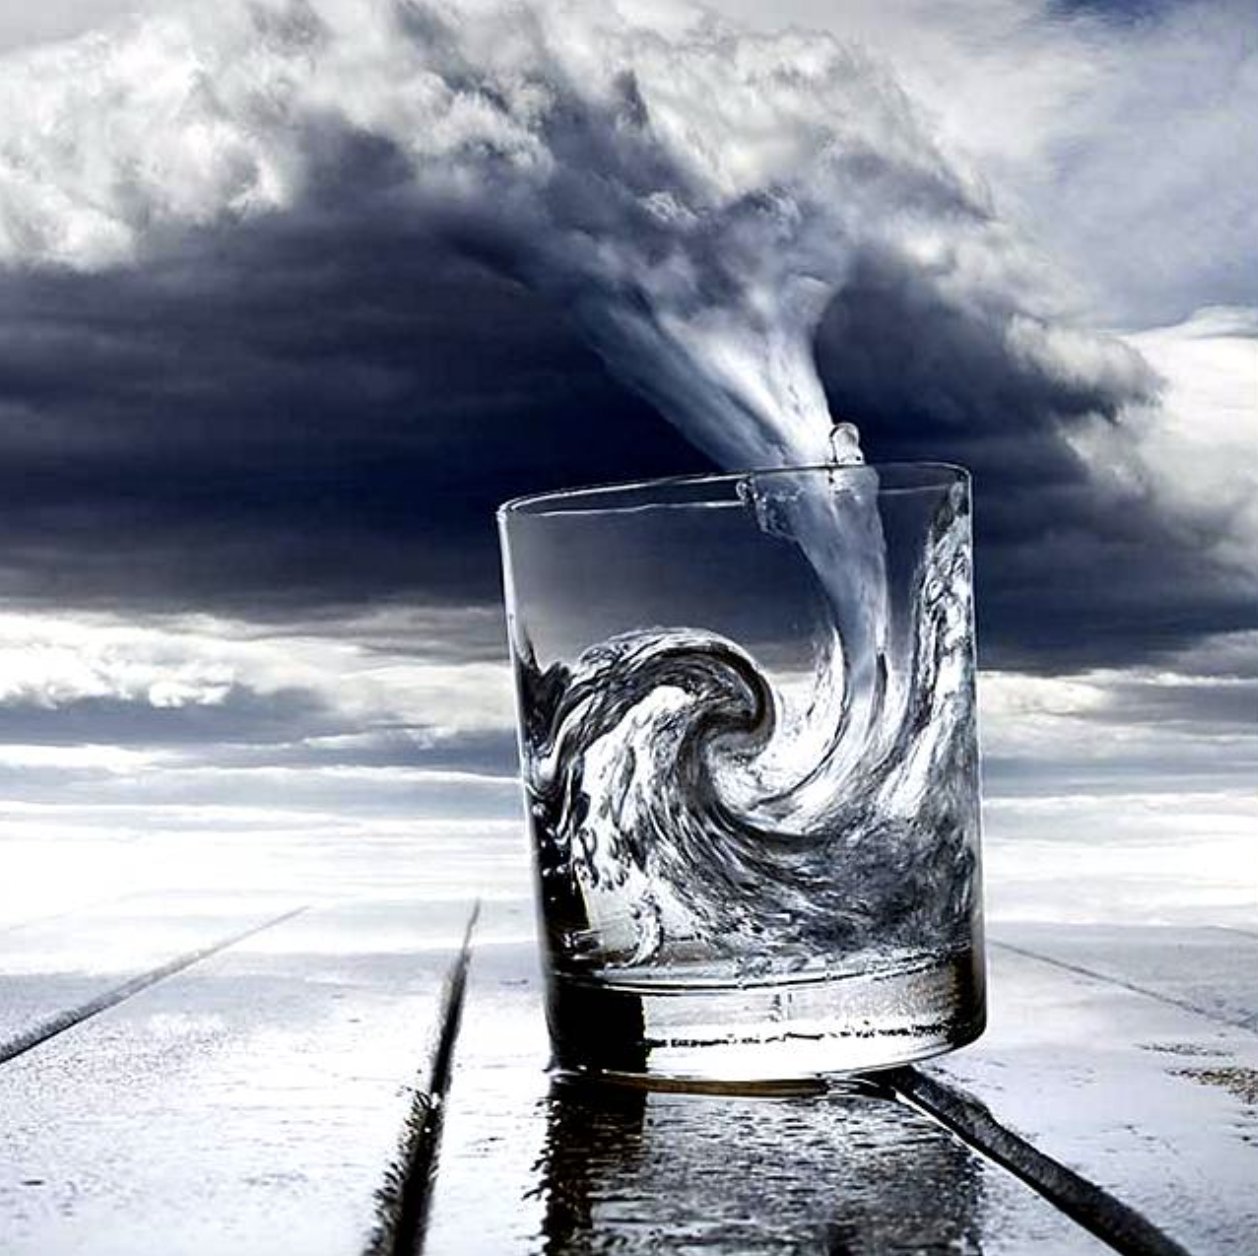 Вода сильно поднялась. Буря в стакане воды. Шторм в стакане. Шторм в стакане воды. Водоворот воды в стакане.